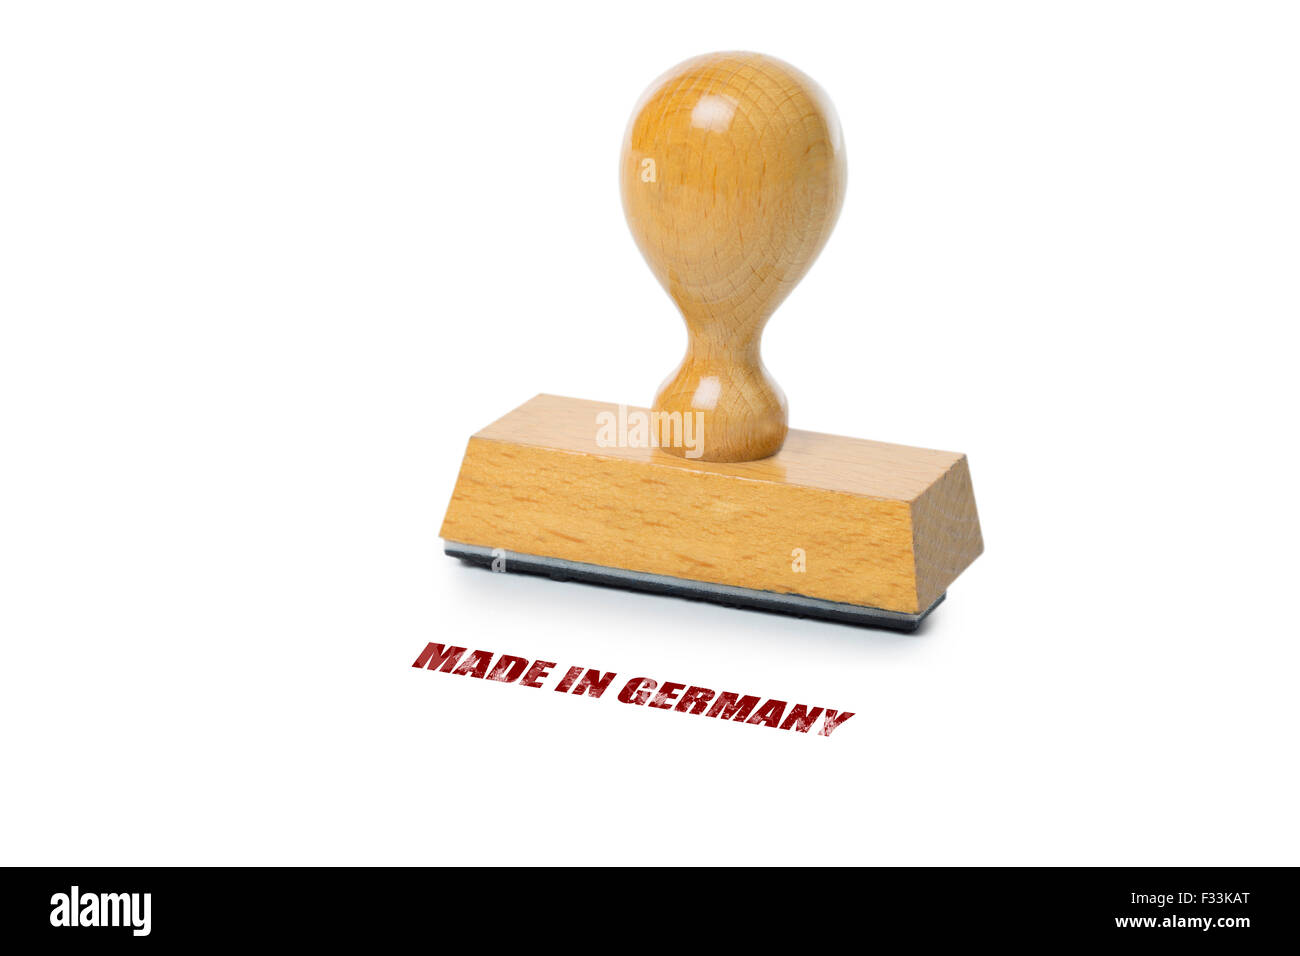 Realizzata in Germania stampata con inchiostro rosso con legno timbro di gomma isolati su sfondo bianco Foto Stock